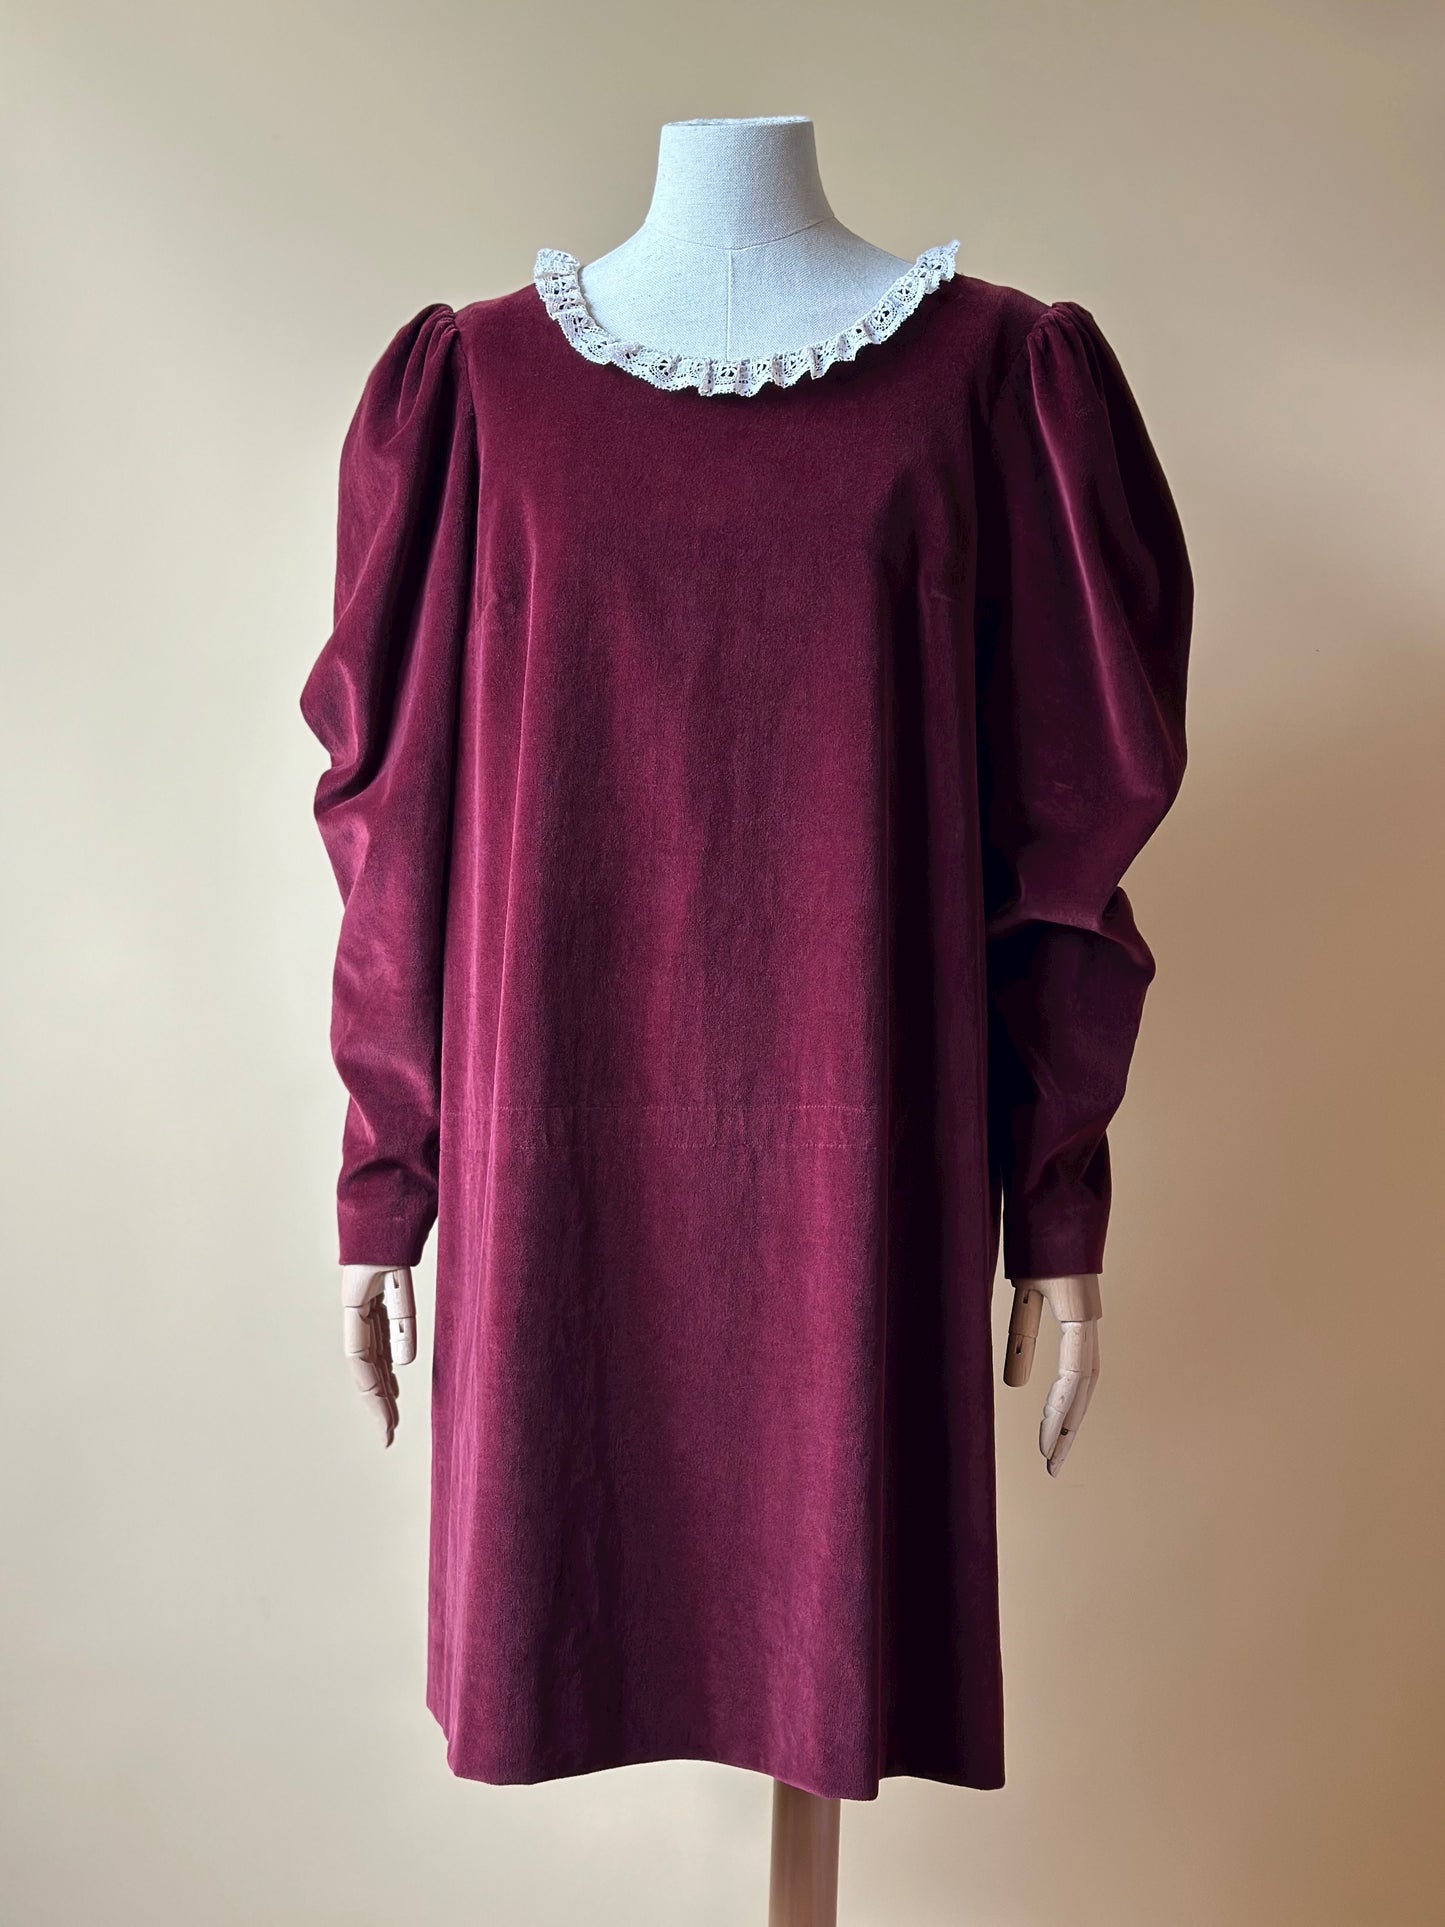 Vintage Velvet Burgundy Dress